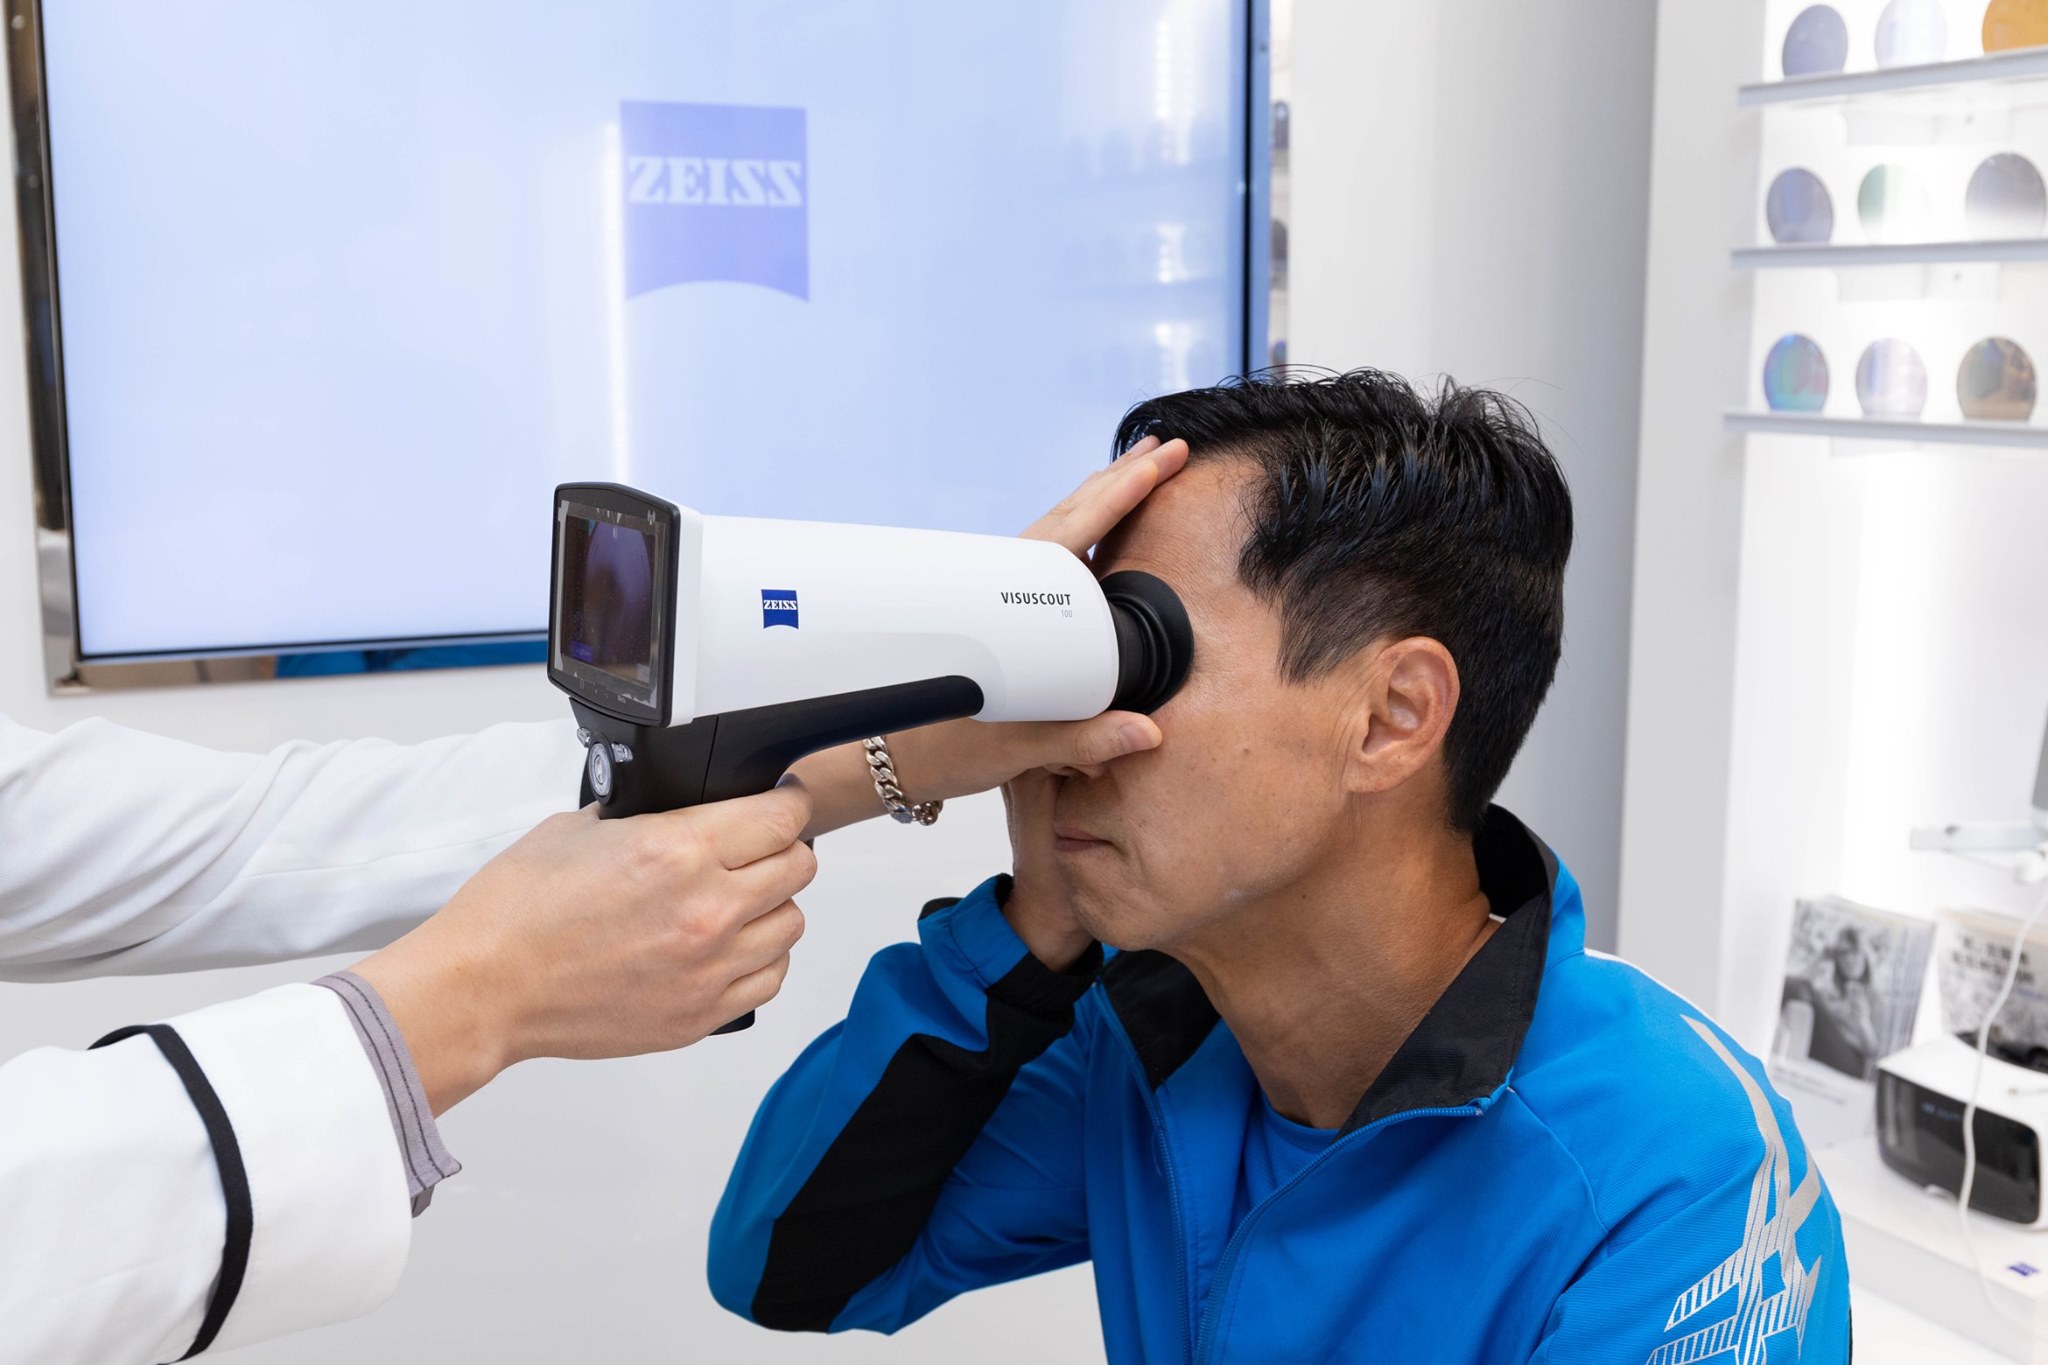 好多人都唔知，有啲身體問題係可以透過視網膜反映出來，就好似香港第二號致盲殺手 - 糖尿病性視網膜病變(俗稱糖尿眼) 。 前香港華人馬拉松紀錄保持者吳師傅就率先體驗整個蔡司VISUHEALTH流程，利用VISUSCOUT眼底攝影機以5分鐘檢查視網膜健康，除咗驗光同時了解自己嘅視網膜情況。 定期篩查可以及早發現糖尿眼問題，防患未然！...